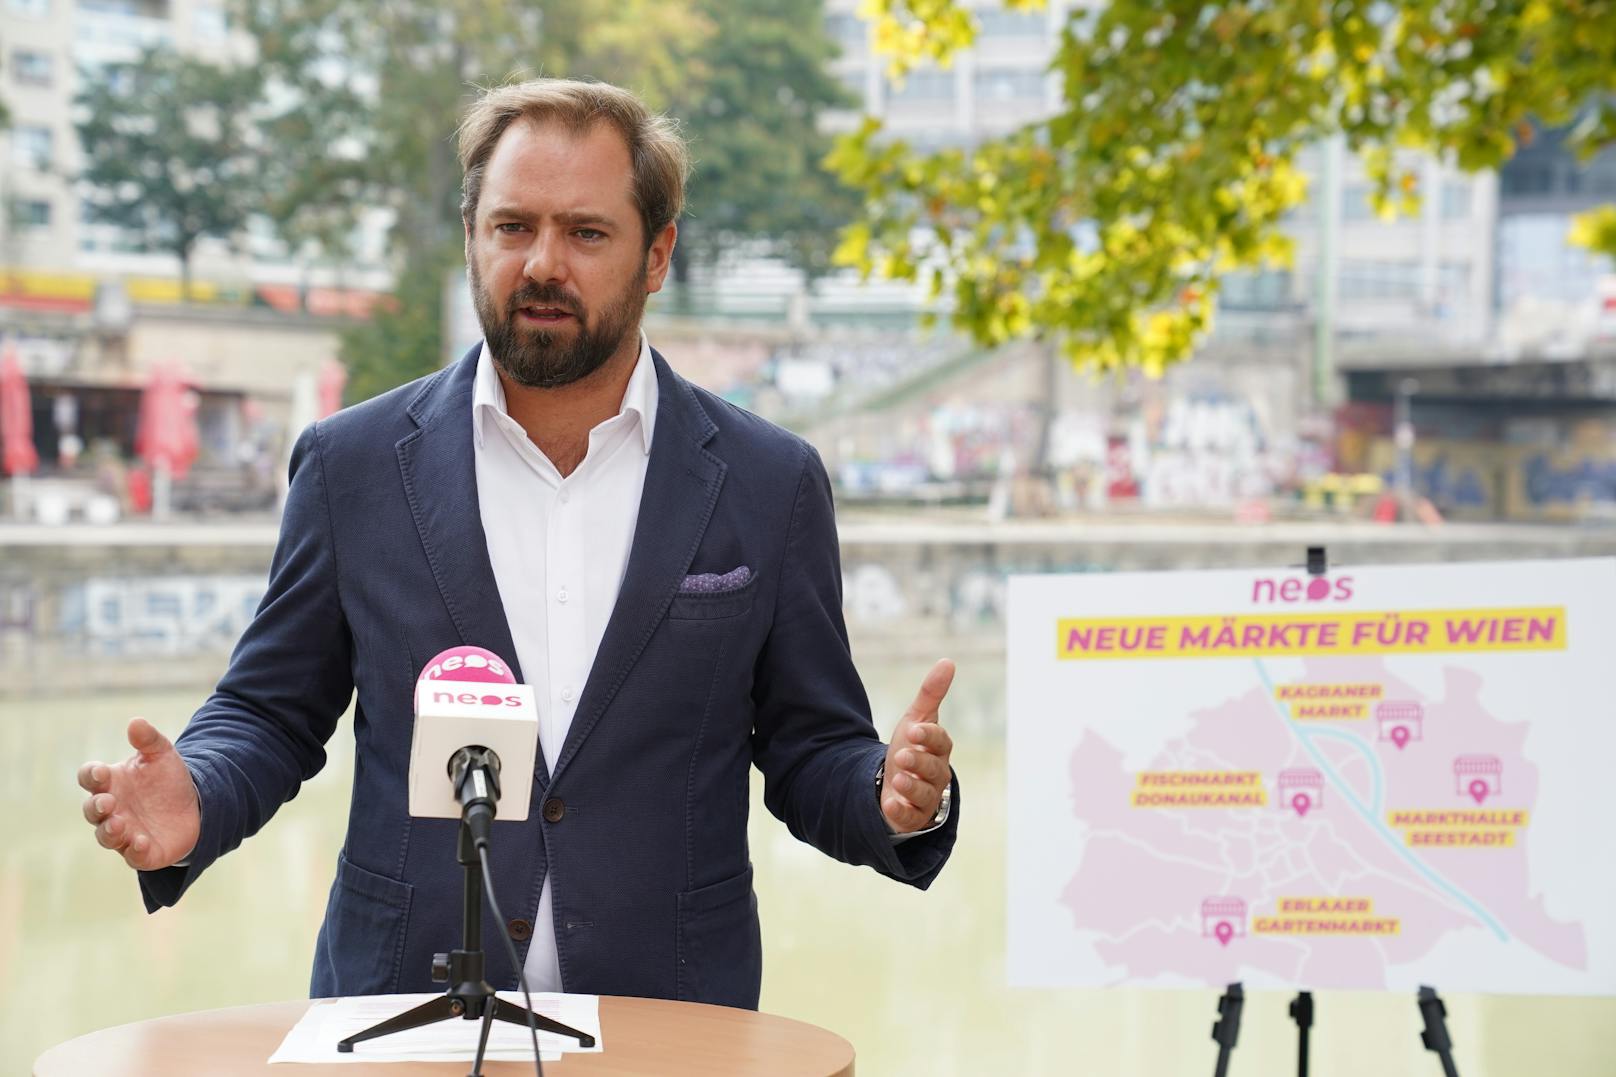 Markus Ornig von den Neos präsentierte den Plan für vier neue Märkte in Wien.